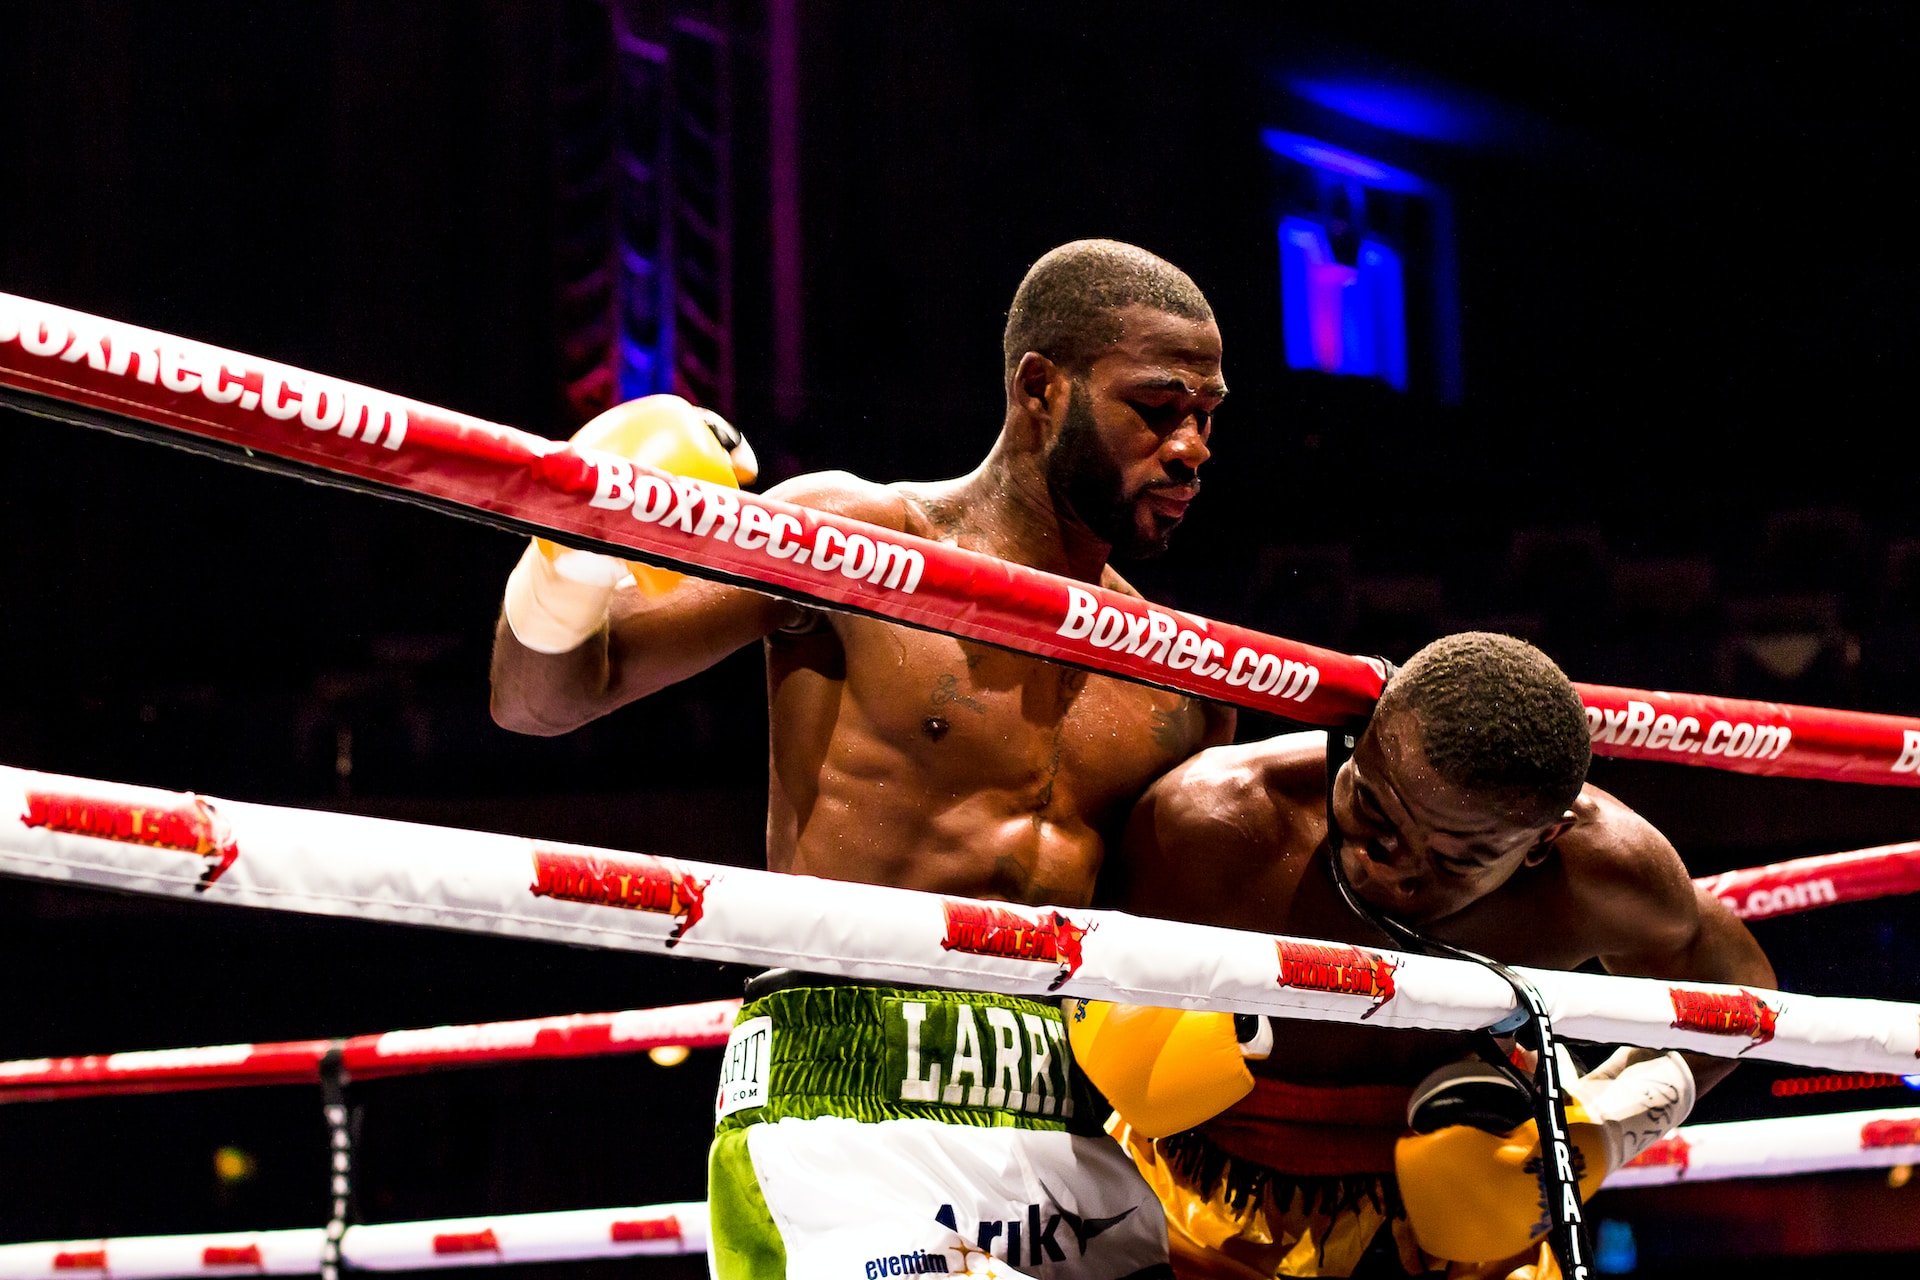 Un combat de boxe sur un ring au corps à corps.